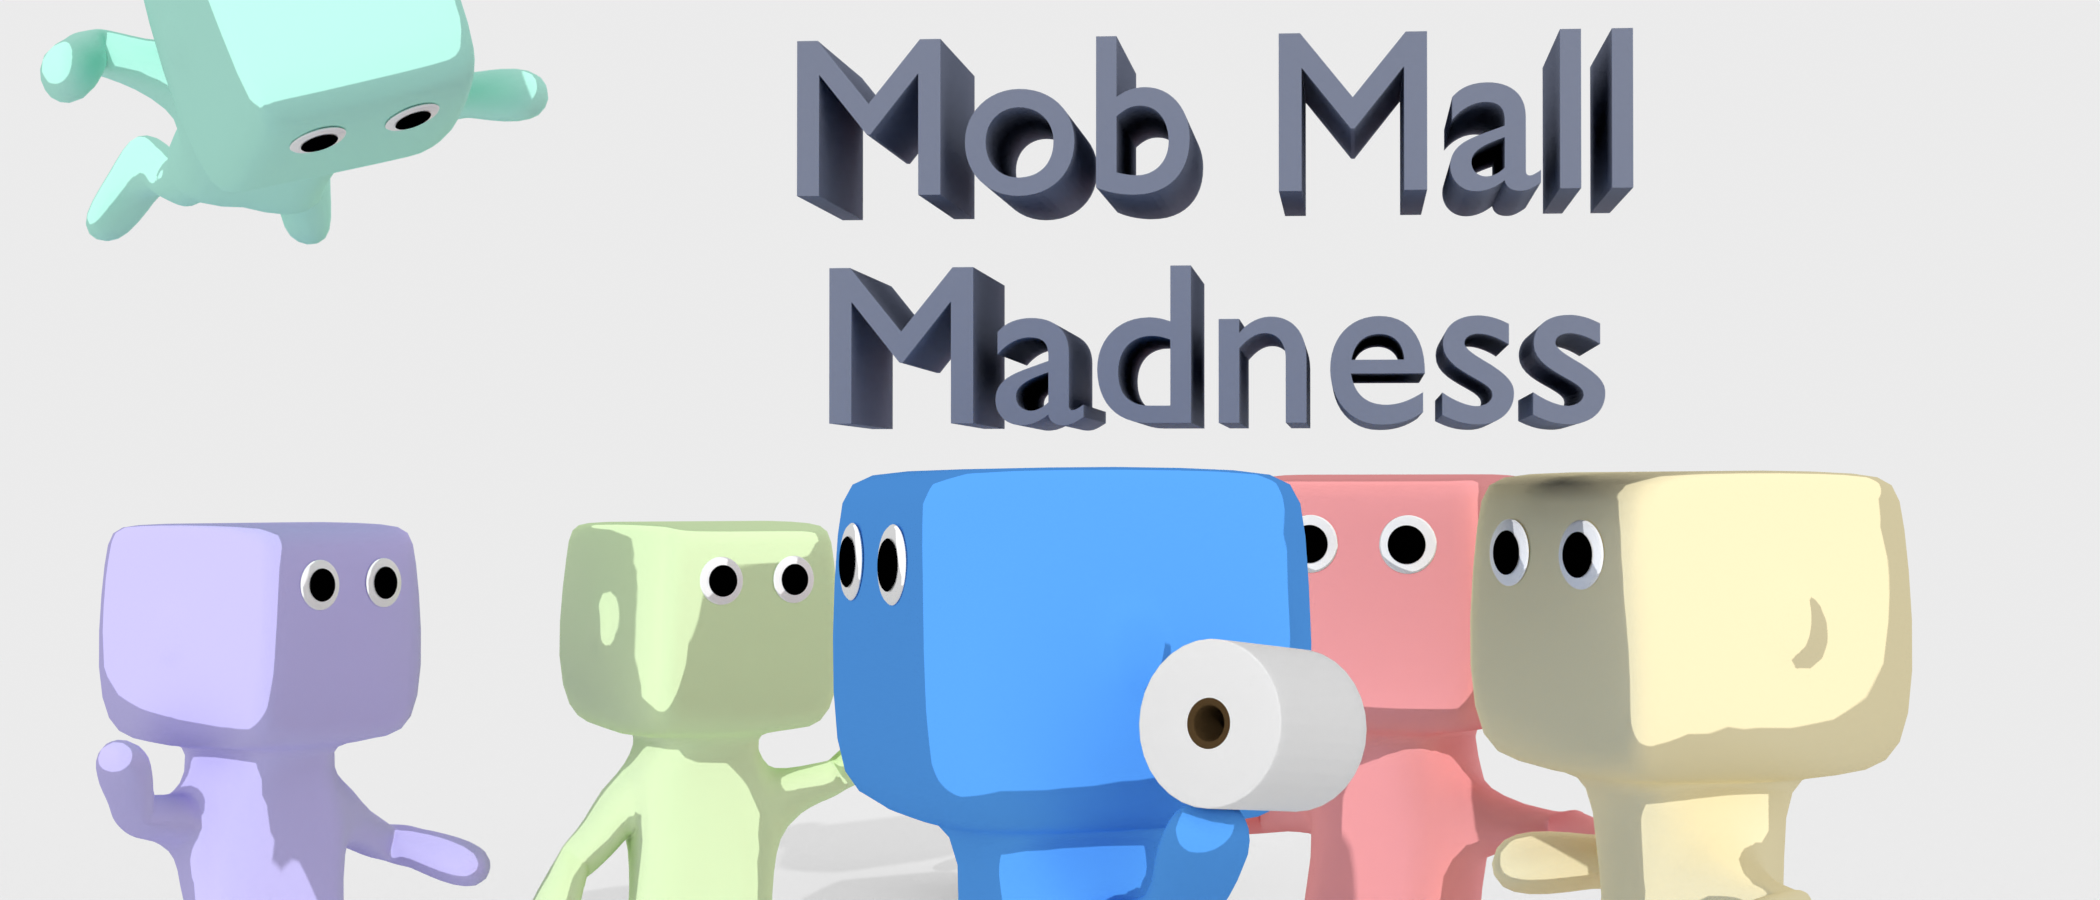 Mob Mall Madness